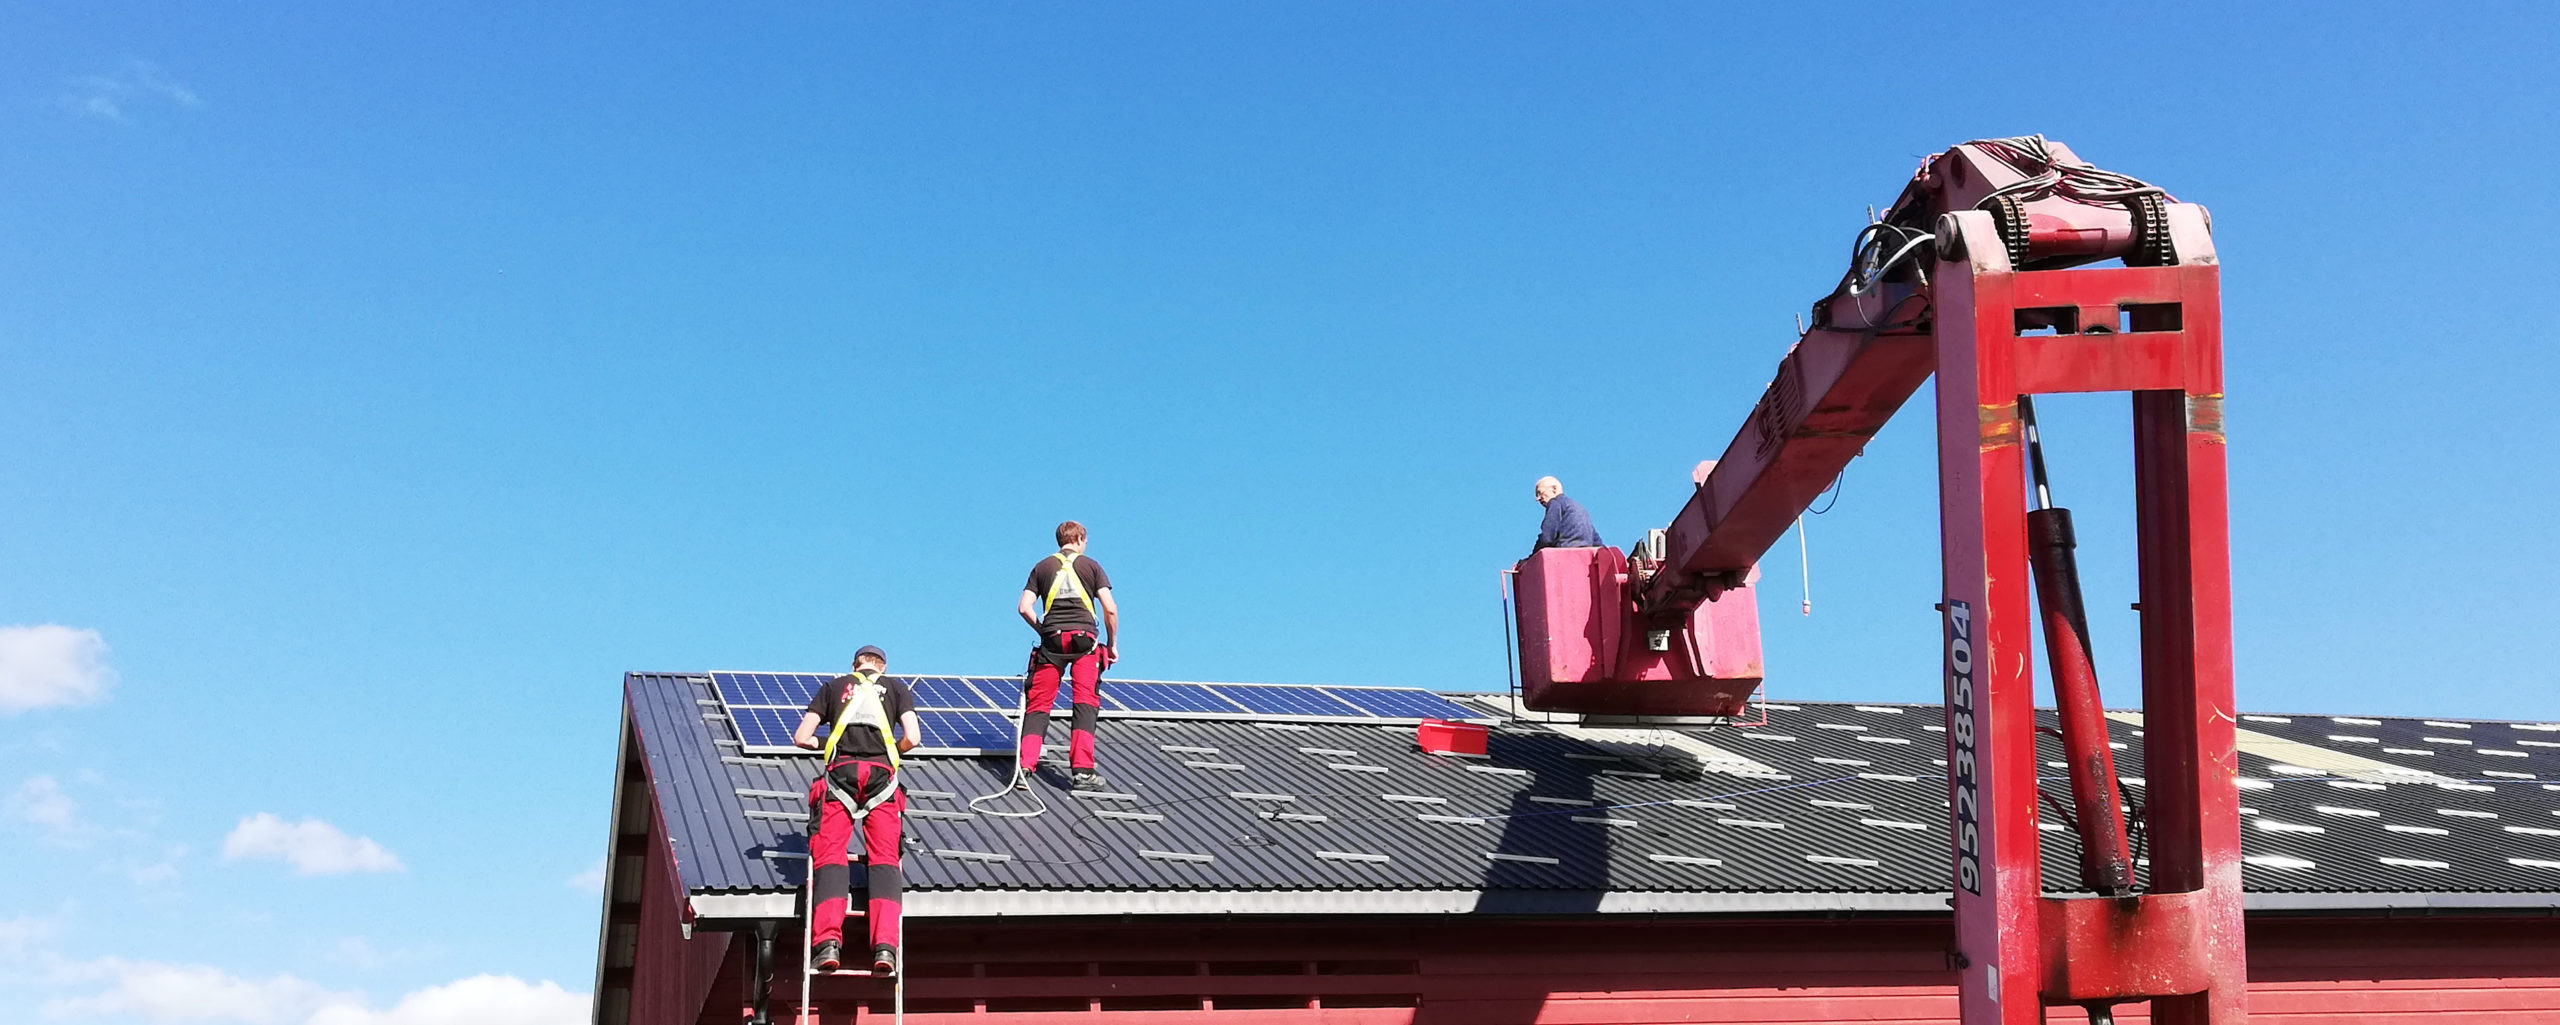 Montering av solcelleanlegg på fjøstaket, solenergi Norge as